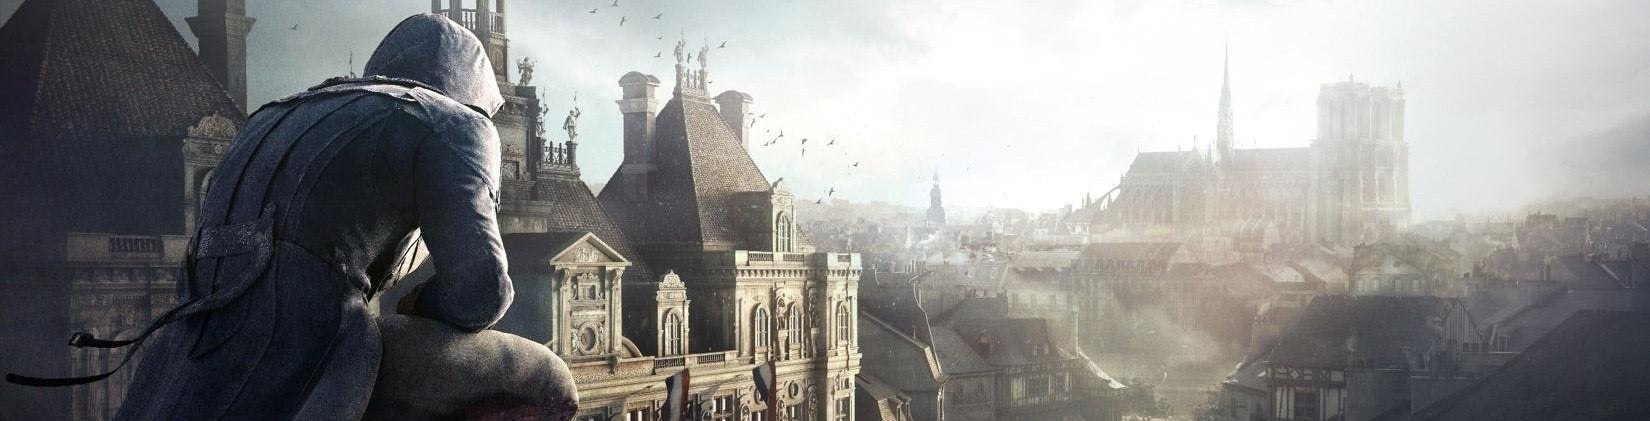 Imagen para Análisis de rendimiento de Assassin's Creed Unity